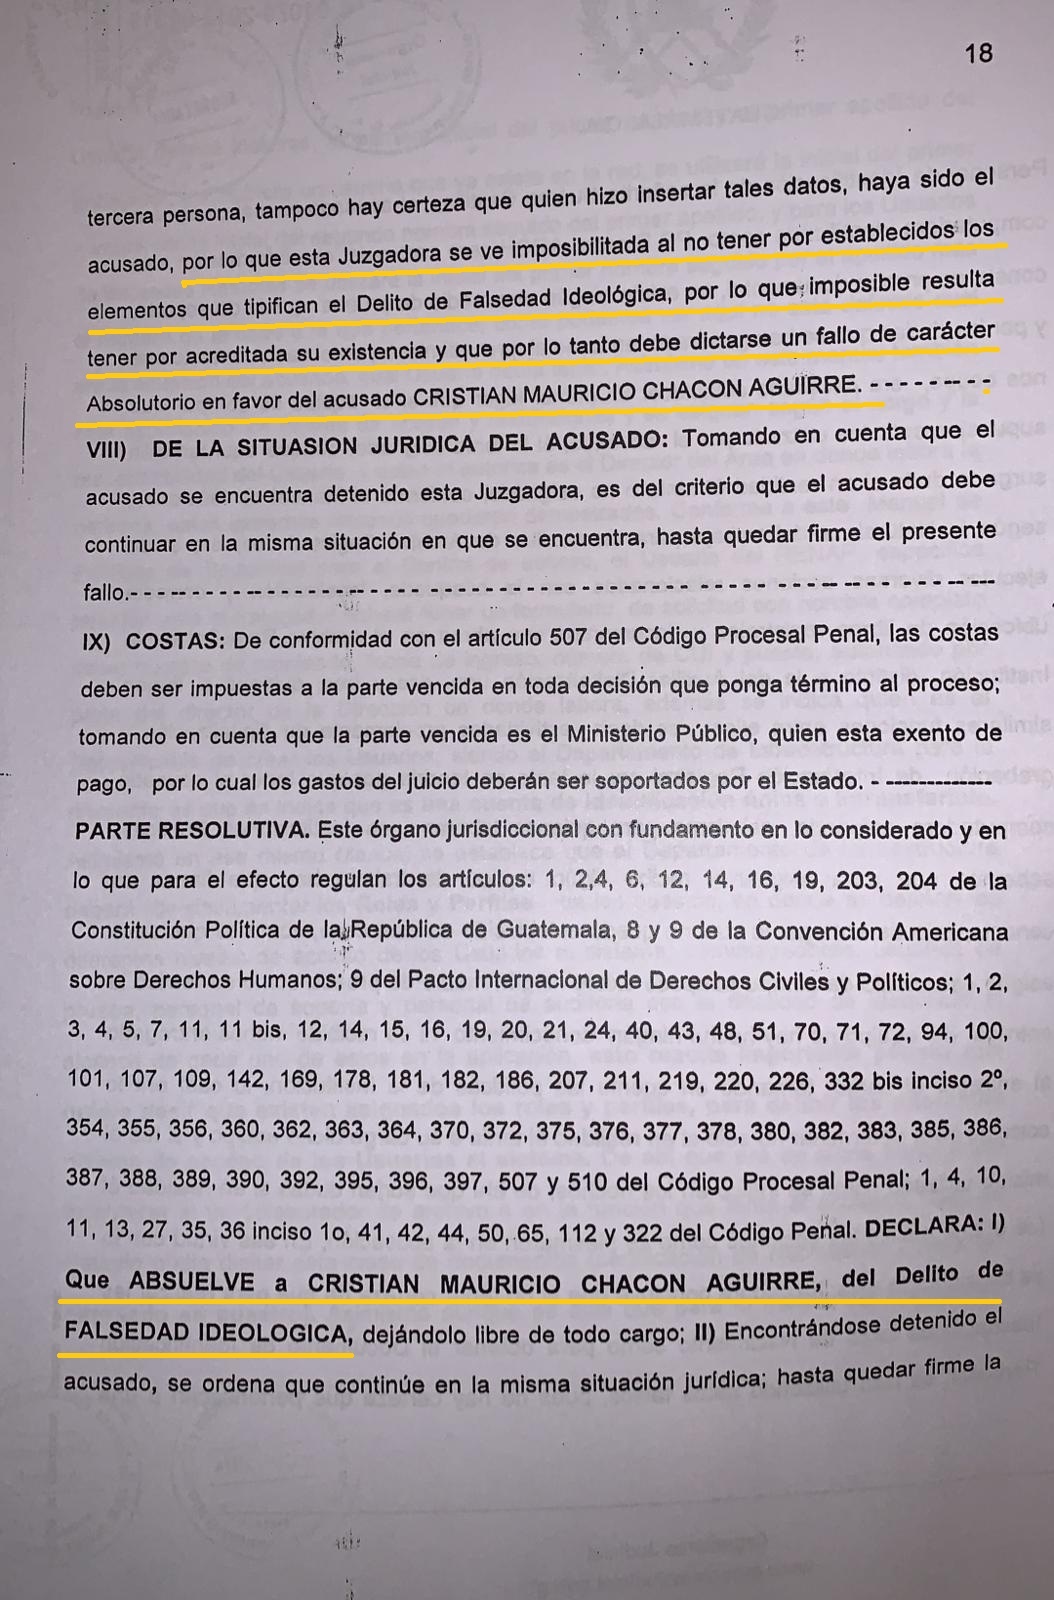 La sentencia absolutoria de Cristian Mauricio Chacon Aguirre